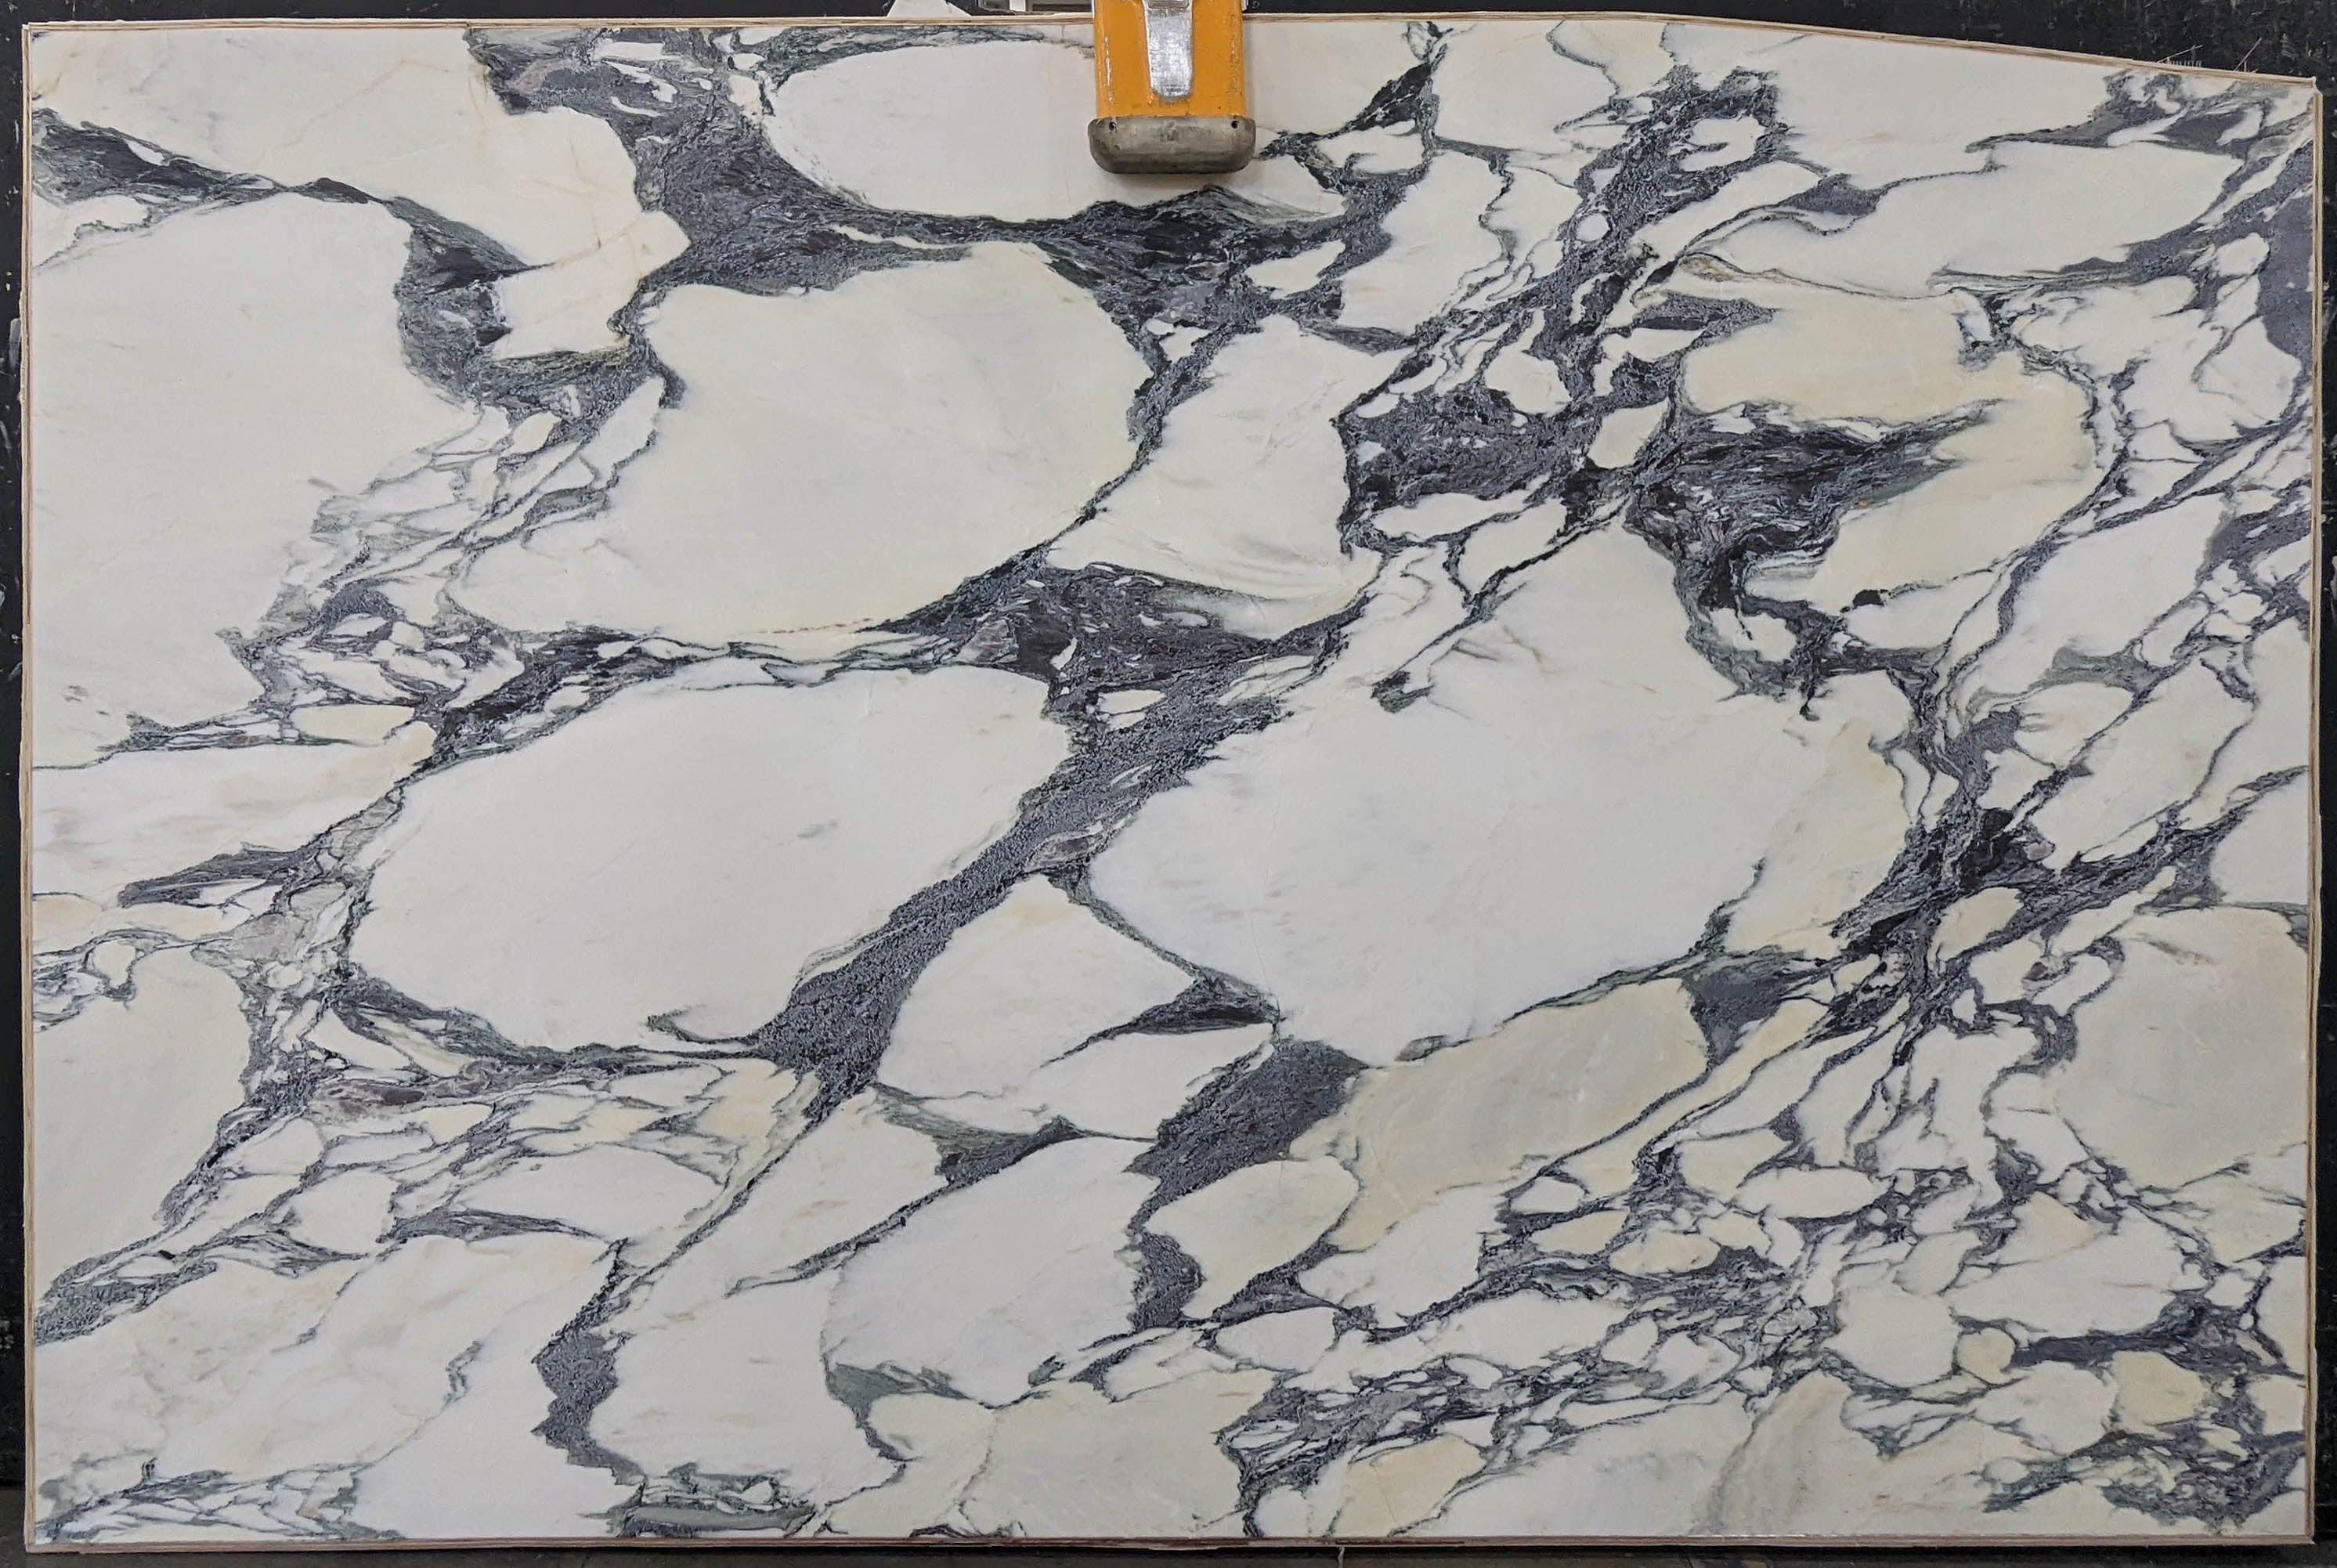  Calacatta Viola Marble Slab 3/4 - 13737A#57 -  74x116 